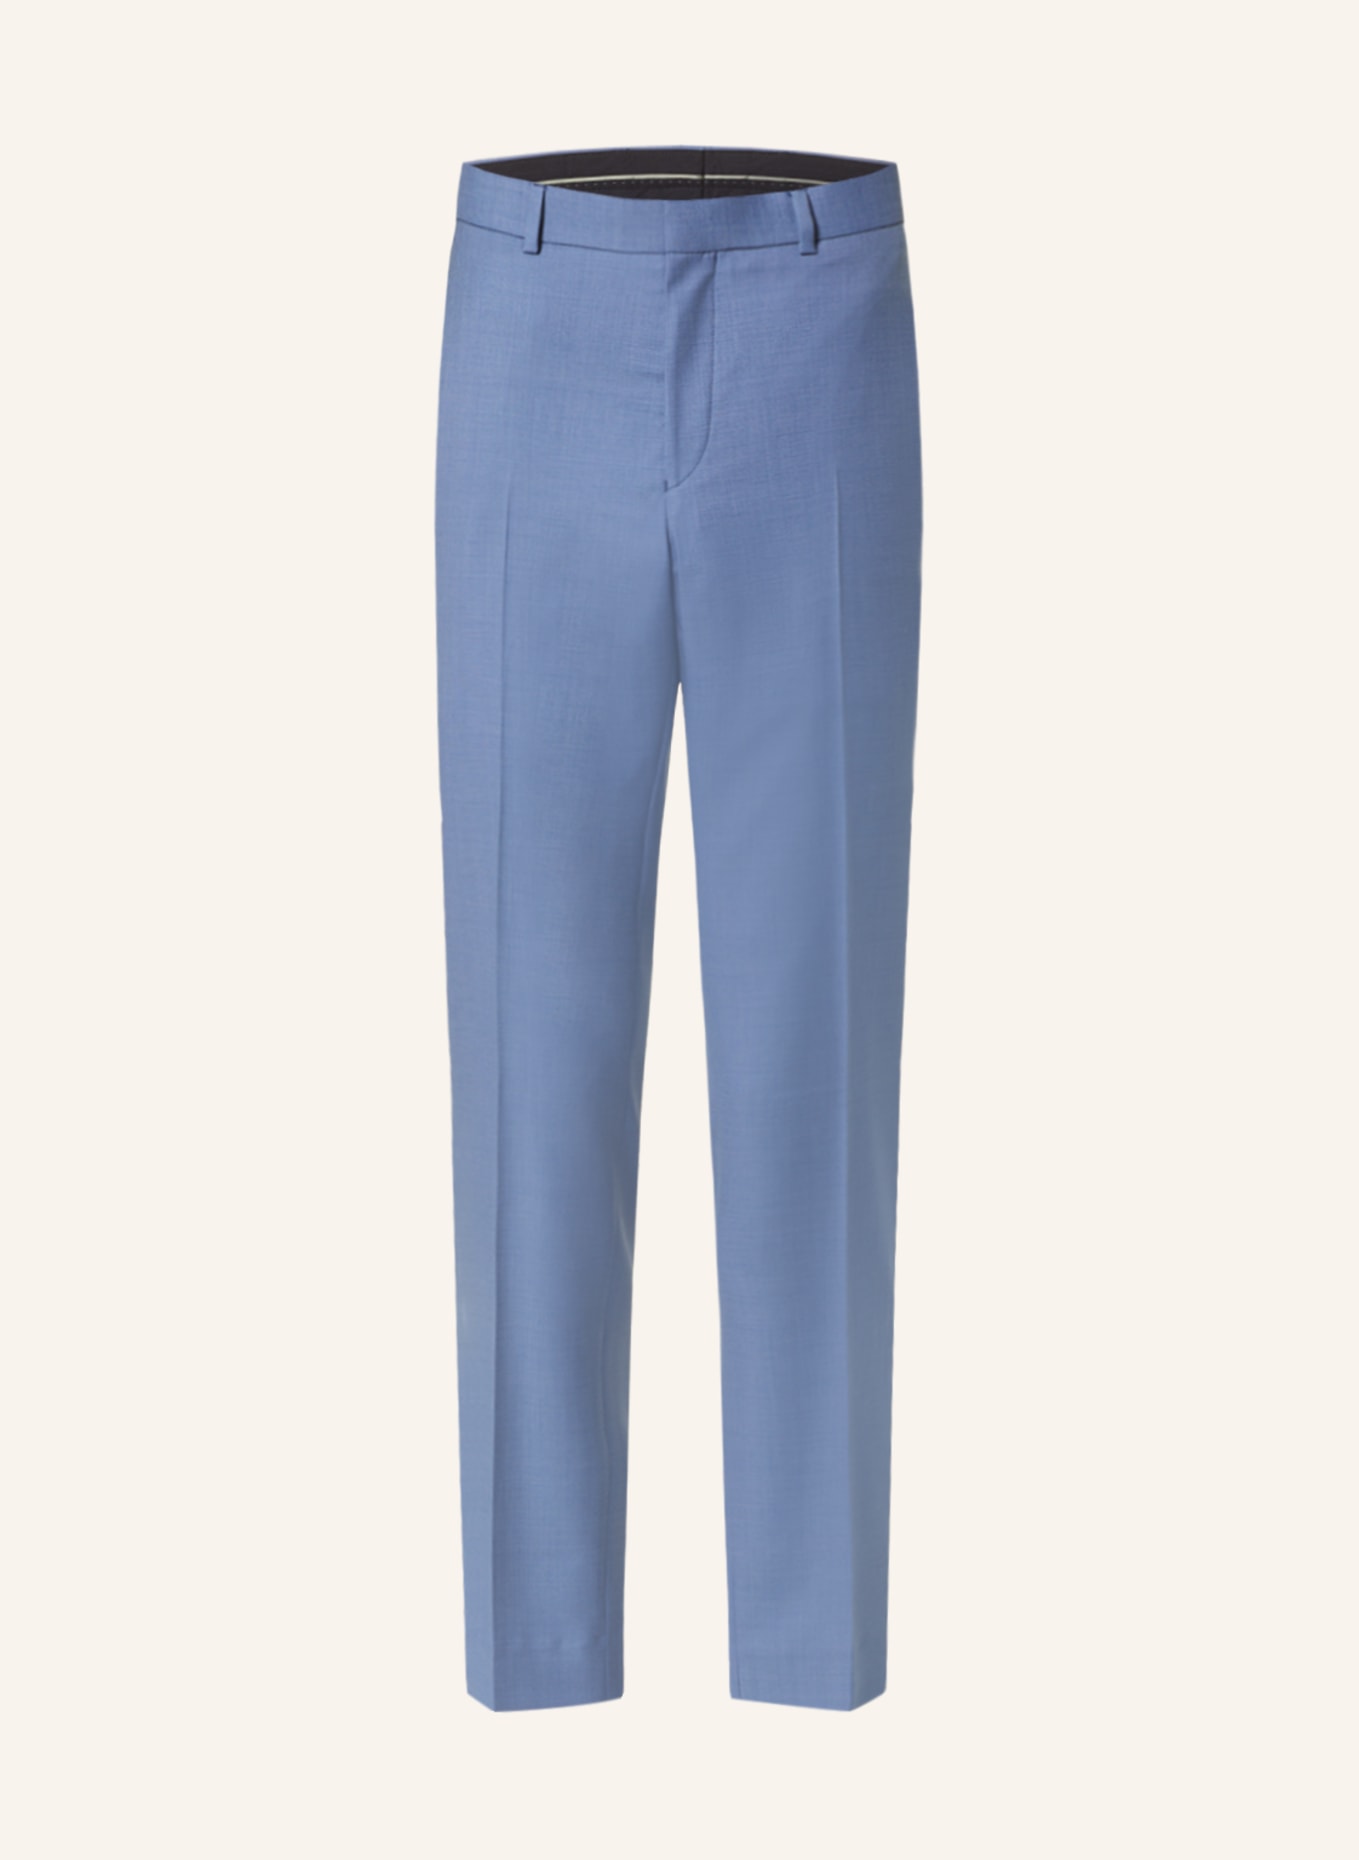 TED BAKER Suit trousers DORSETS Slim fit, Color: BLUE BLUE (Image 1)